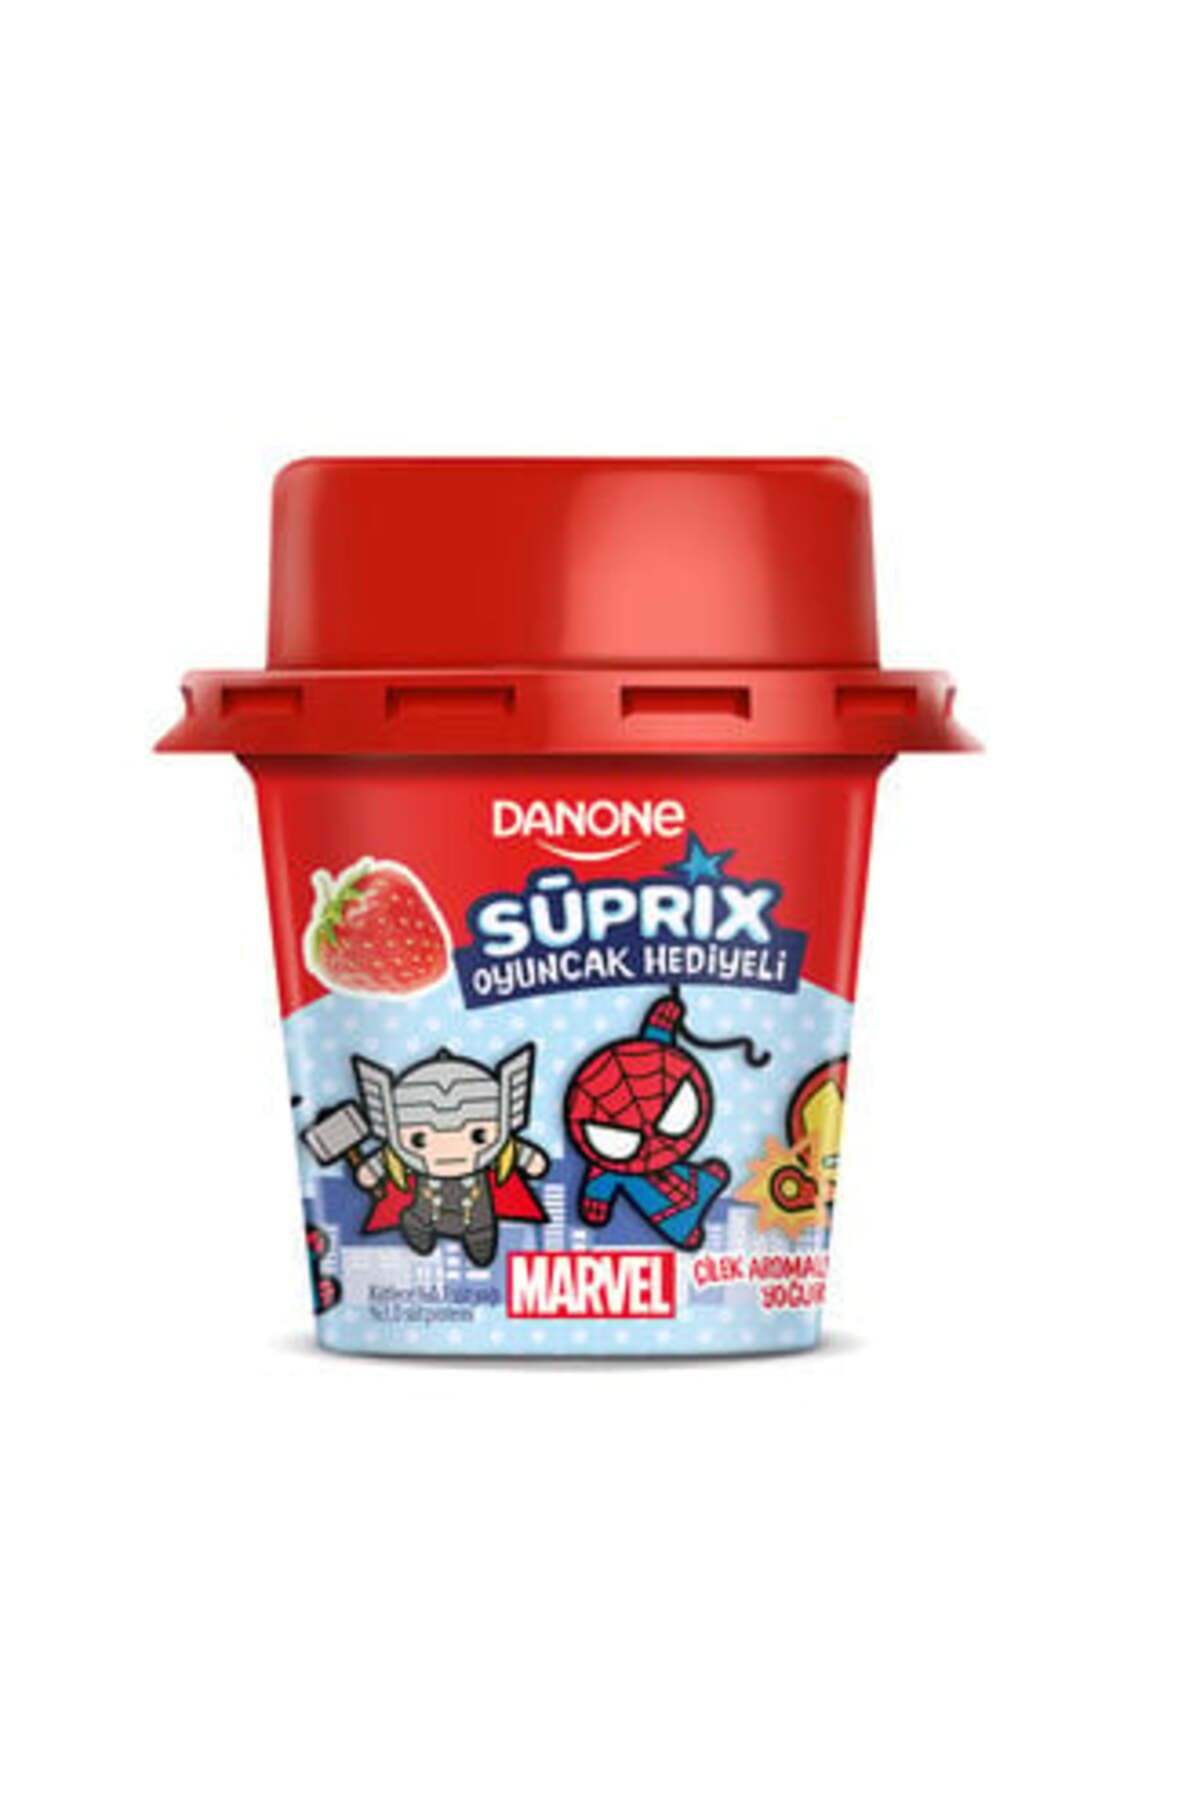 Danone ( ETİ PETİTO HEDİYE ) Danone Süprix Marvel Oyuncak Hediyeli Çilek Aromalı Yoğurt 90 Gr ( 2 ADET )